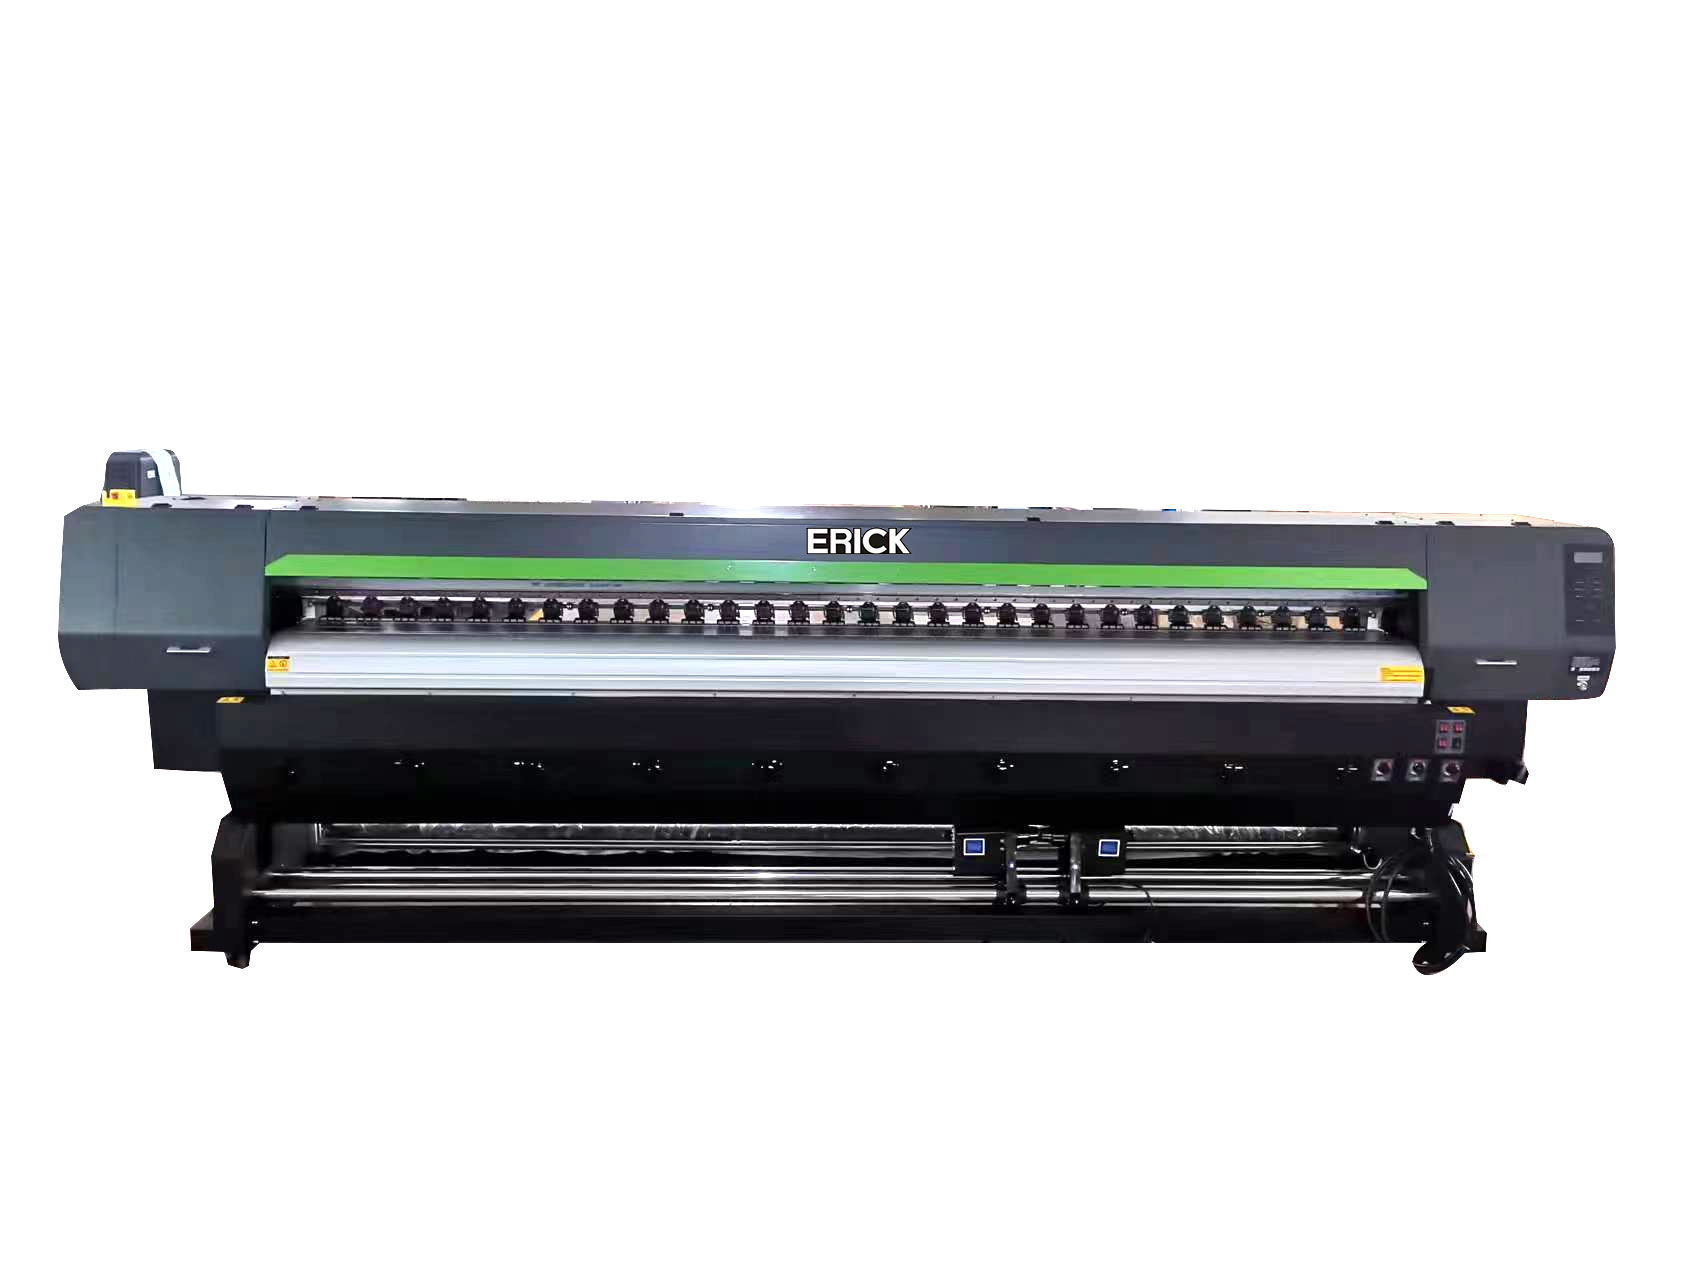 Fabrika 3.2 metre EP-I3200 E1 * 2 adet geniş format eko solvent çizici BASKI MAKİNESİ dijital yazıcı